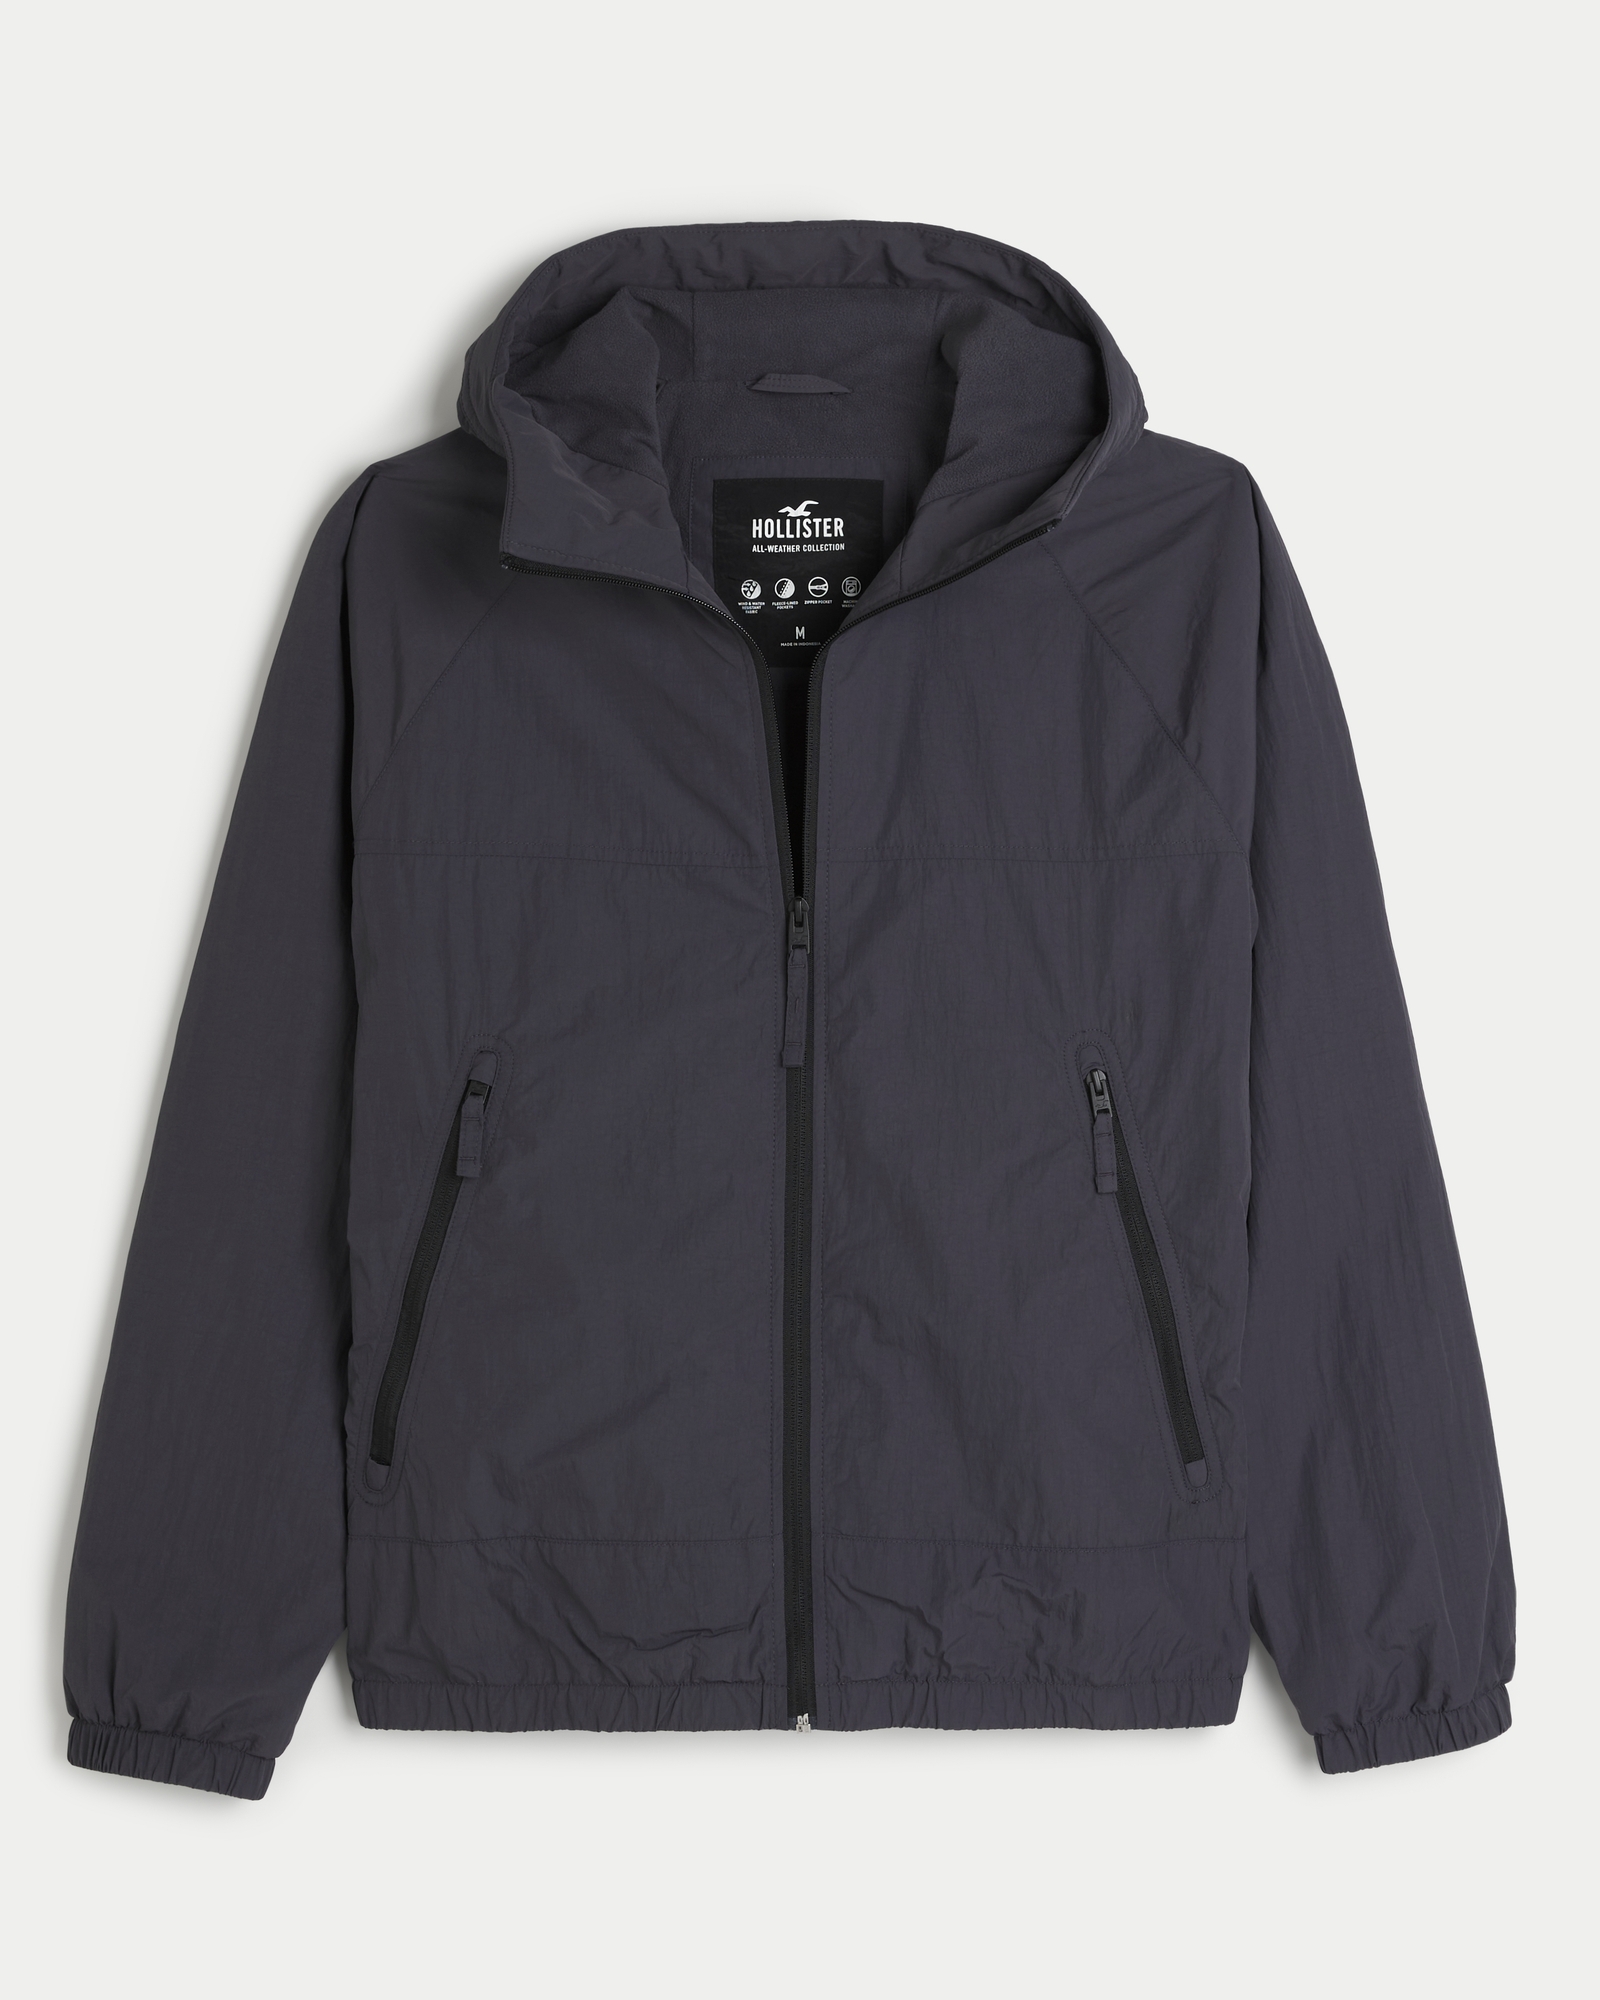 Men's Fleece-Lined All-Weather Zip-Up Jacket, Men's Clearance